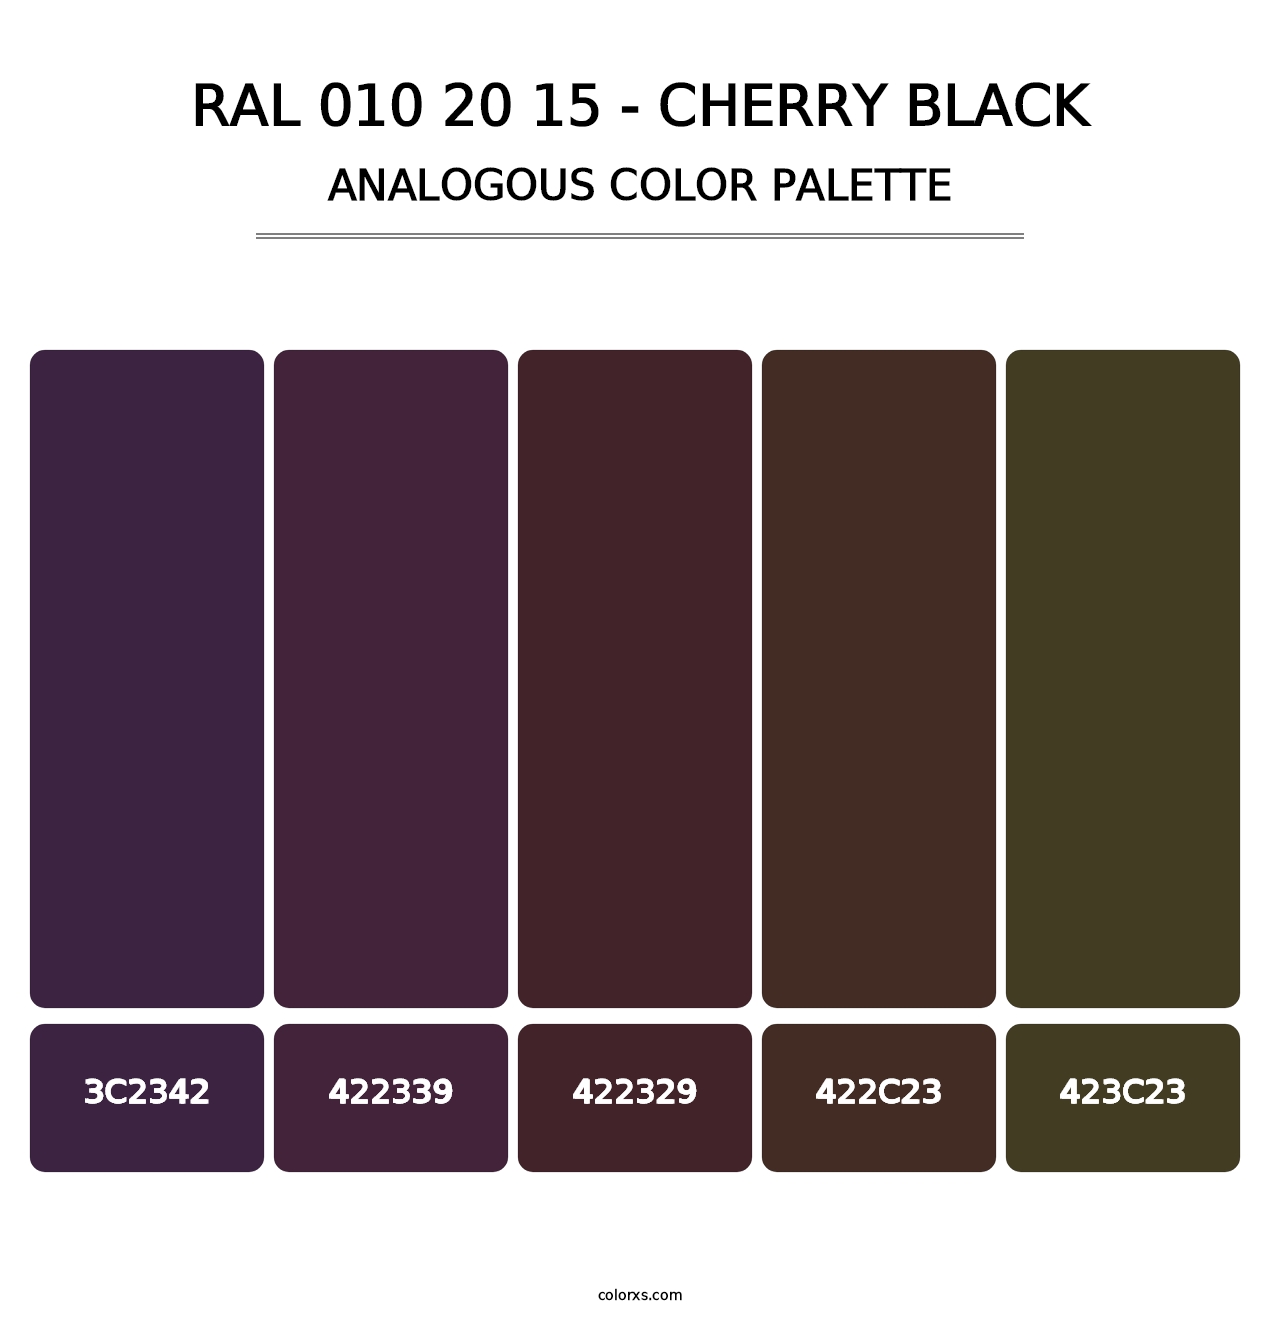 RAL 010 20 15 - Cherry Black - Analogous Color Palette